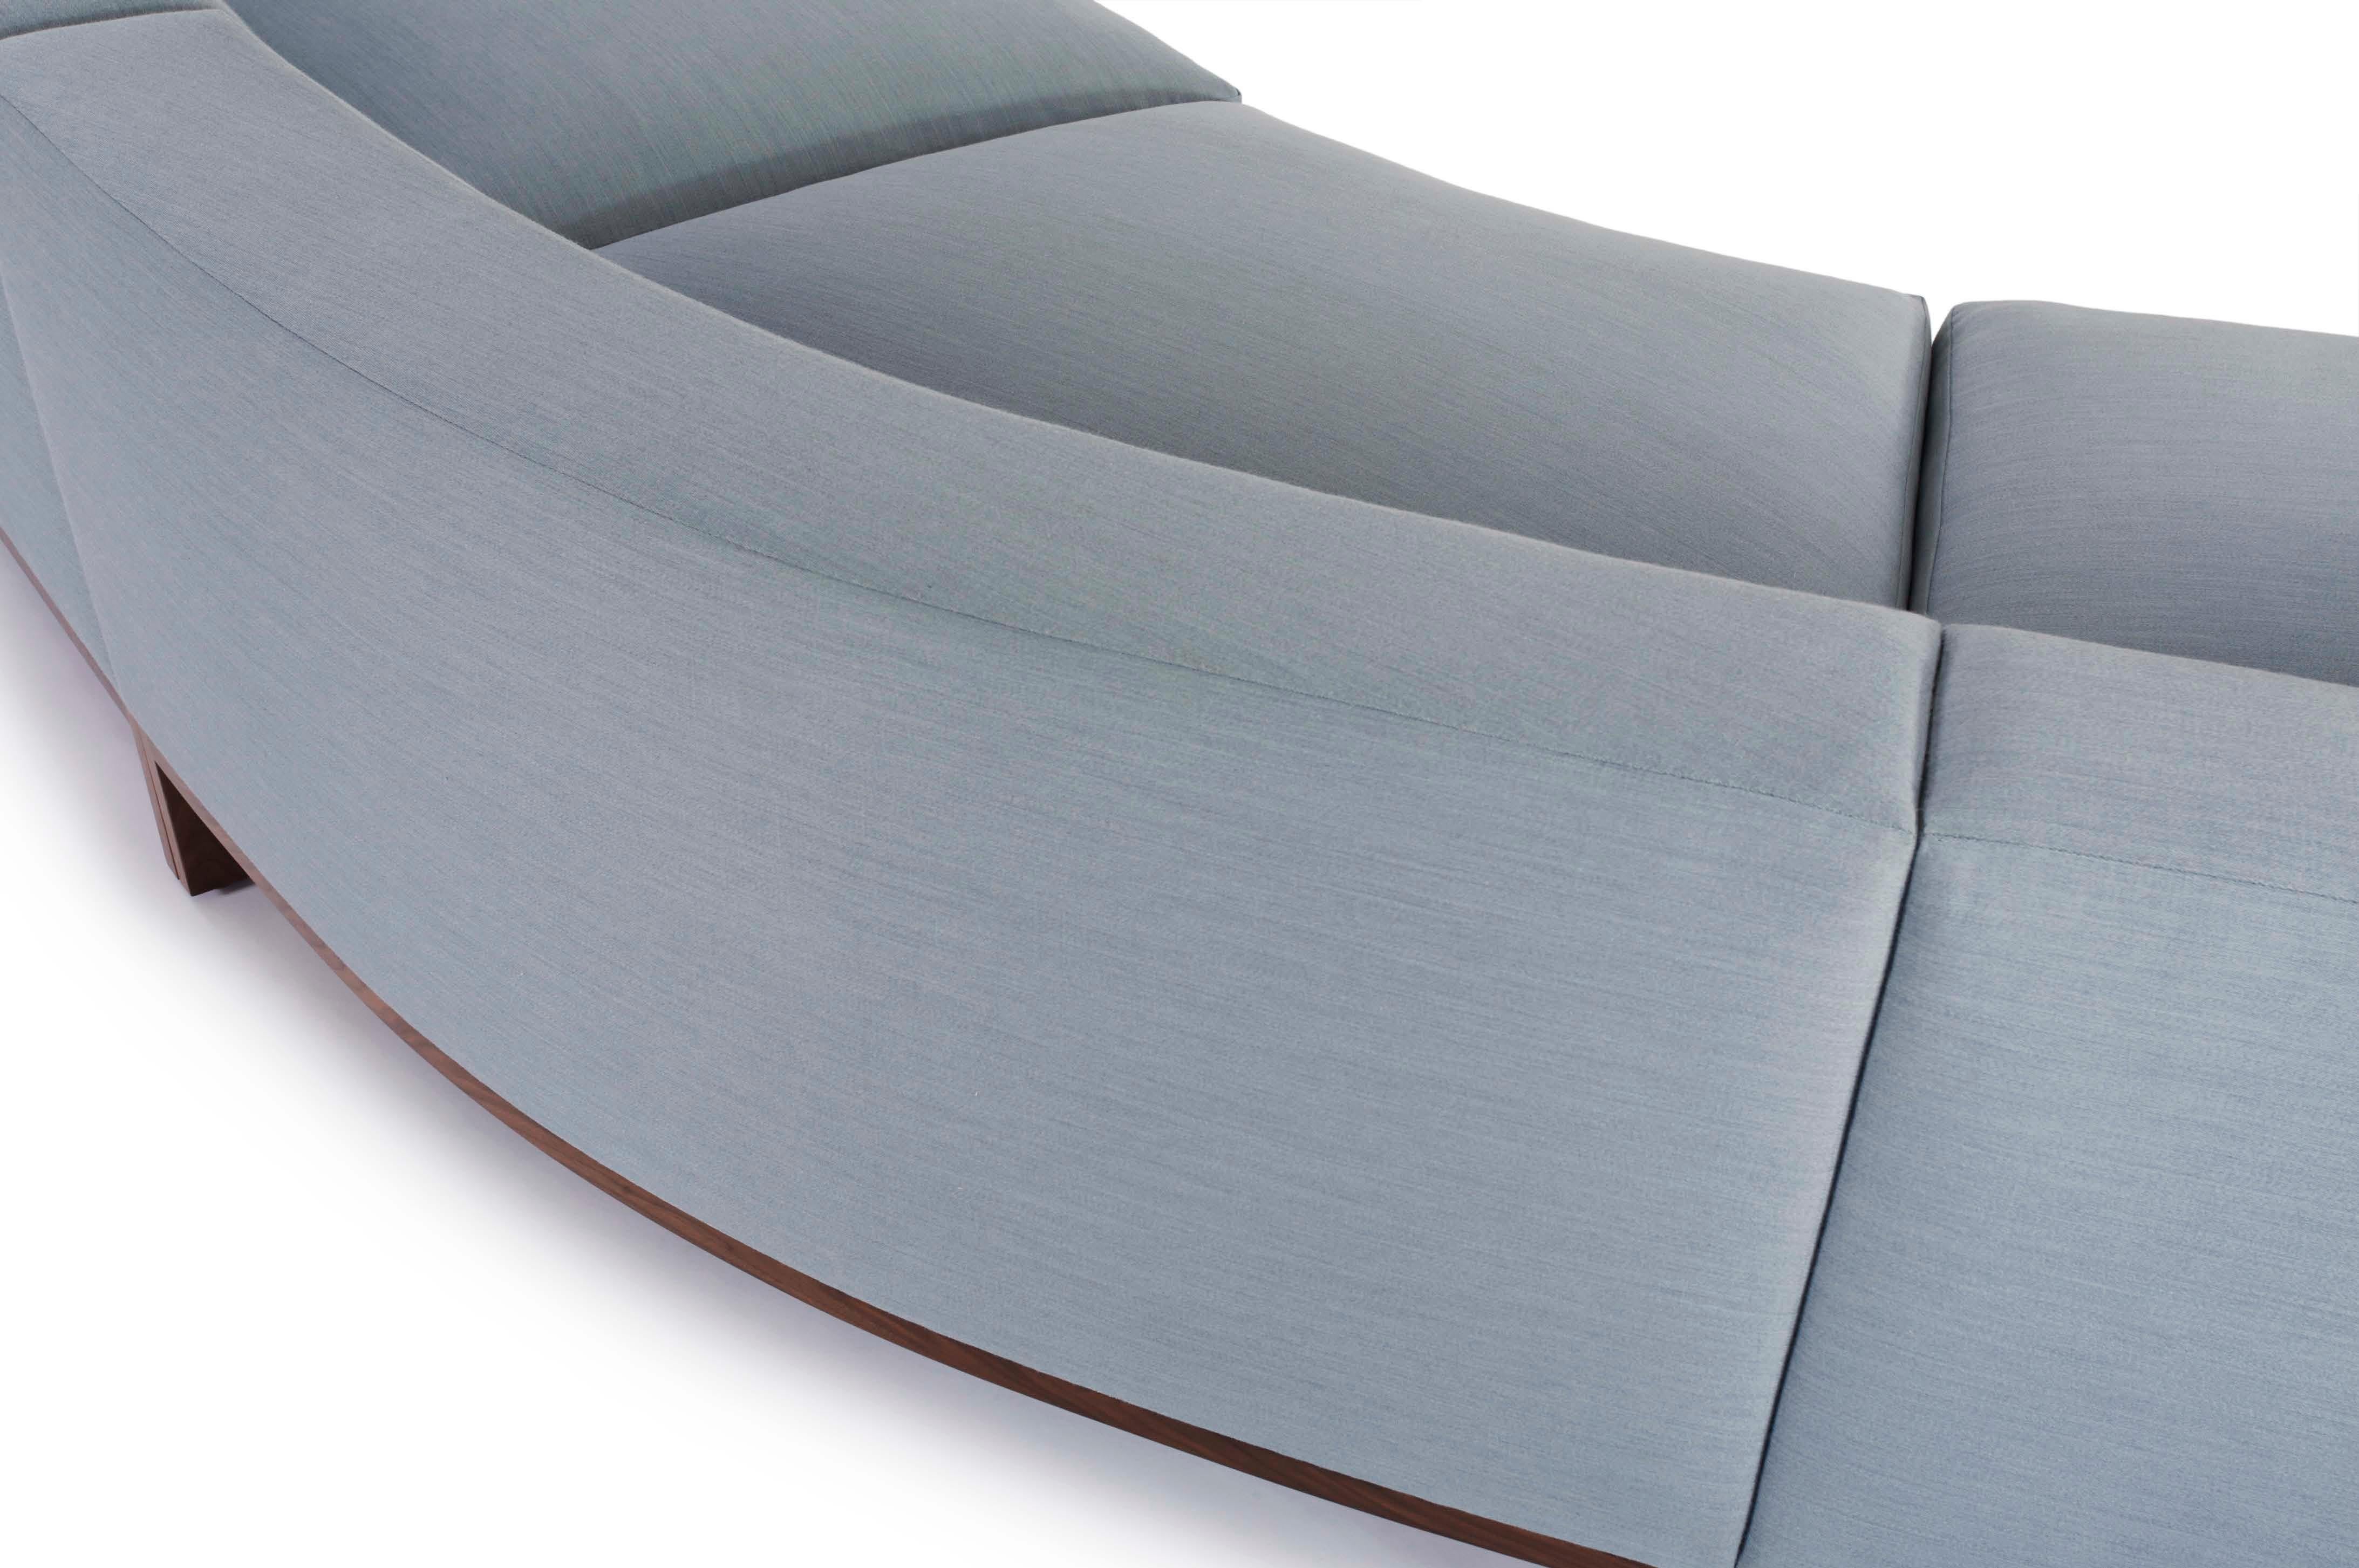 Des lignes simples avec une seule courbe subtile rendent le canapé Loft élégant et énergiquement frais. Classiquement minimal et raffiné, le design défie les idées conventionnelles d'échelle et d'espace.